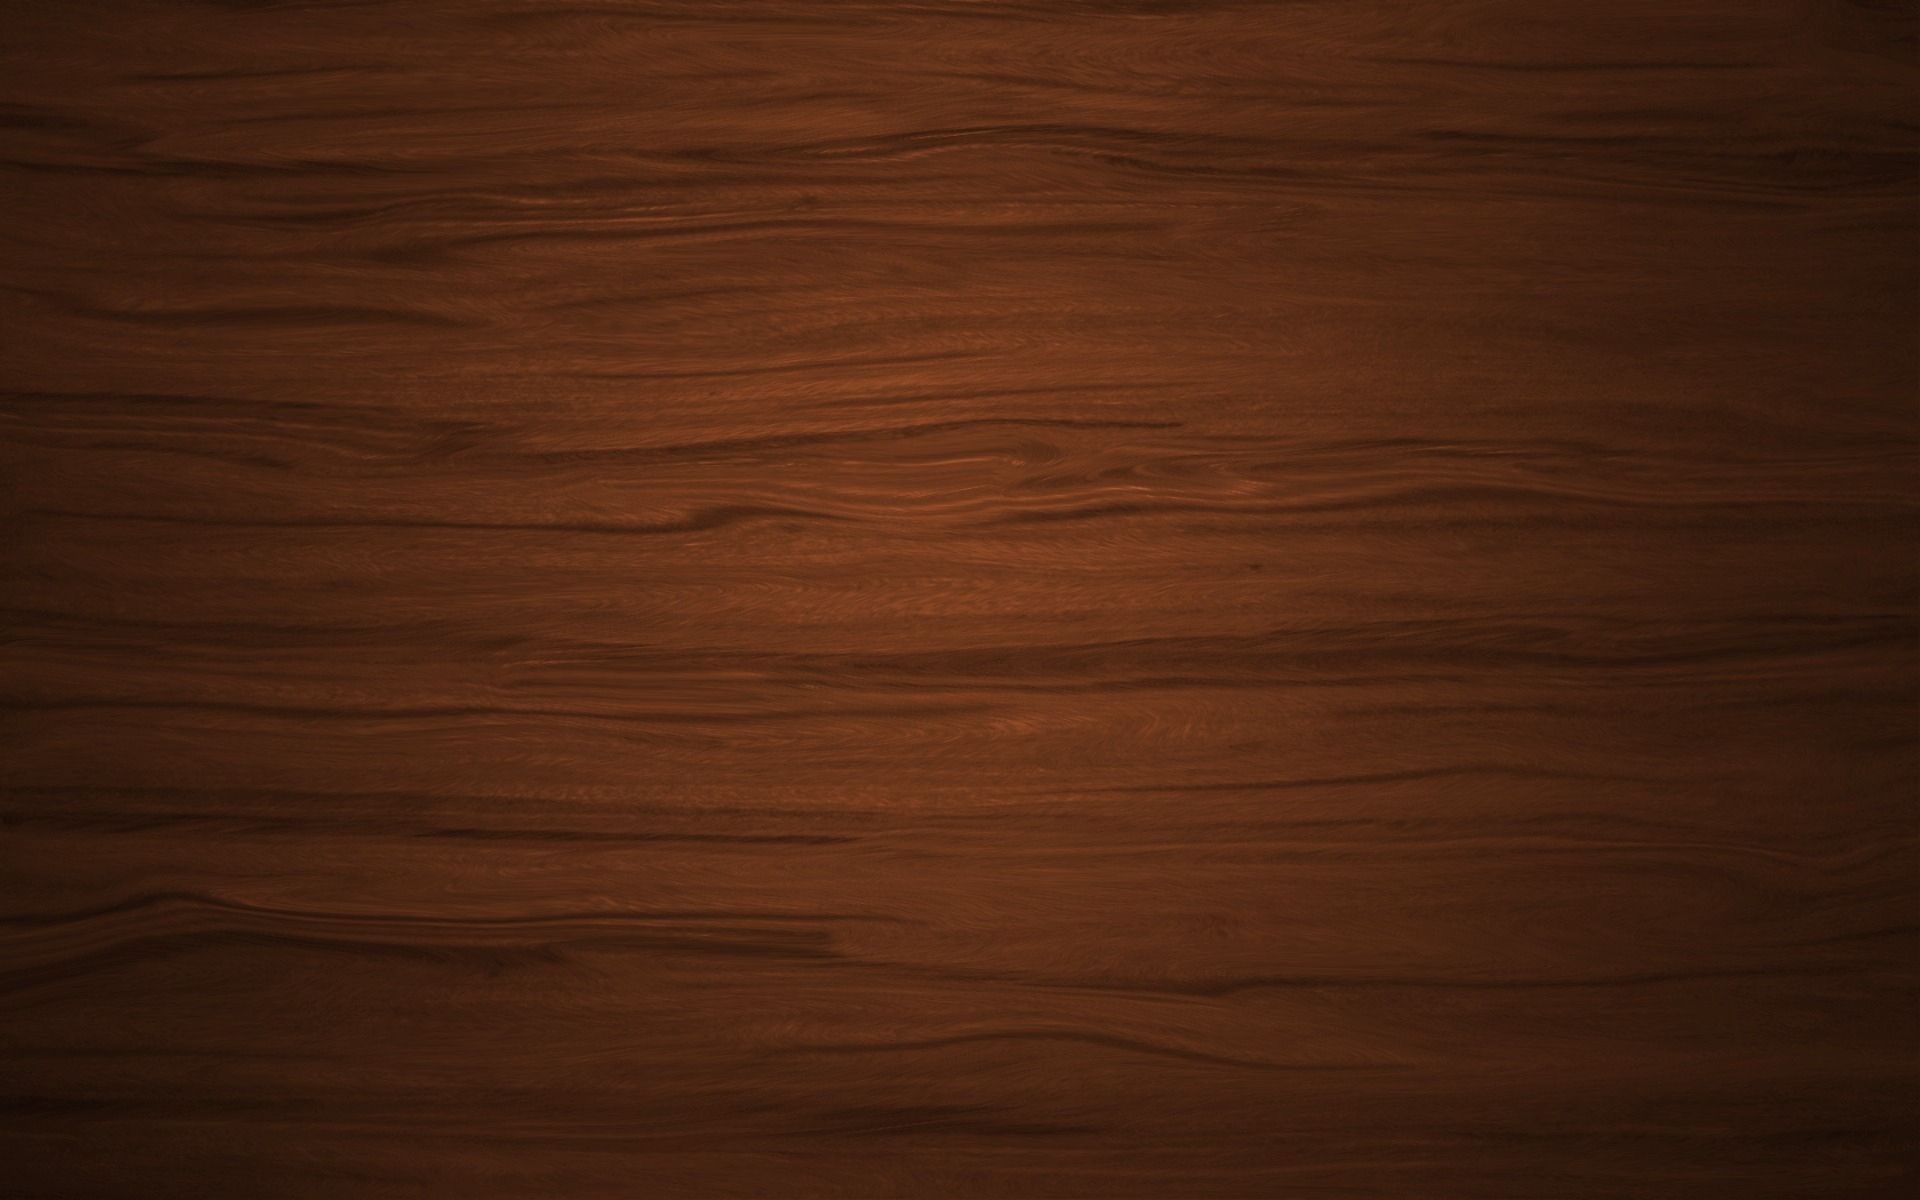 carta da parati da tavolo in legno,legna,marrone,legno duro,color legno,pavimento in legno